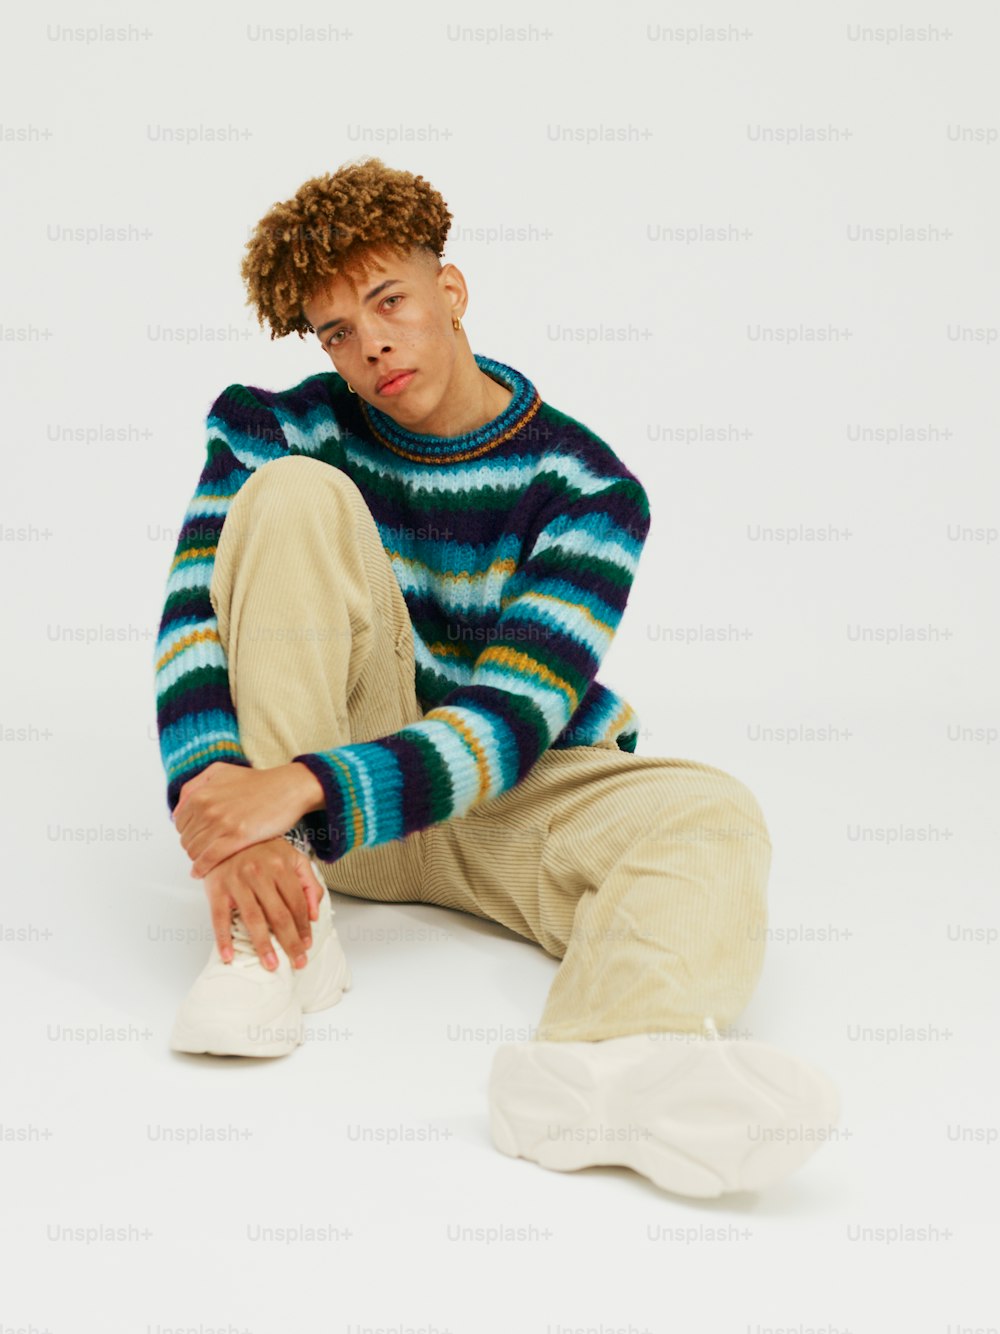 스웨터와 바지를 입고 바닥에 앉아 있는 남자